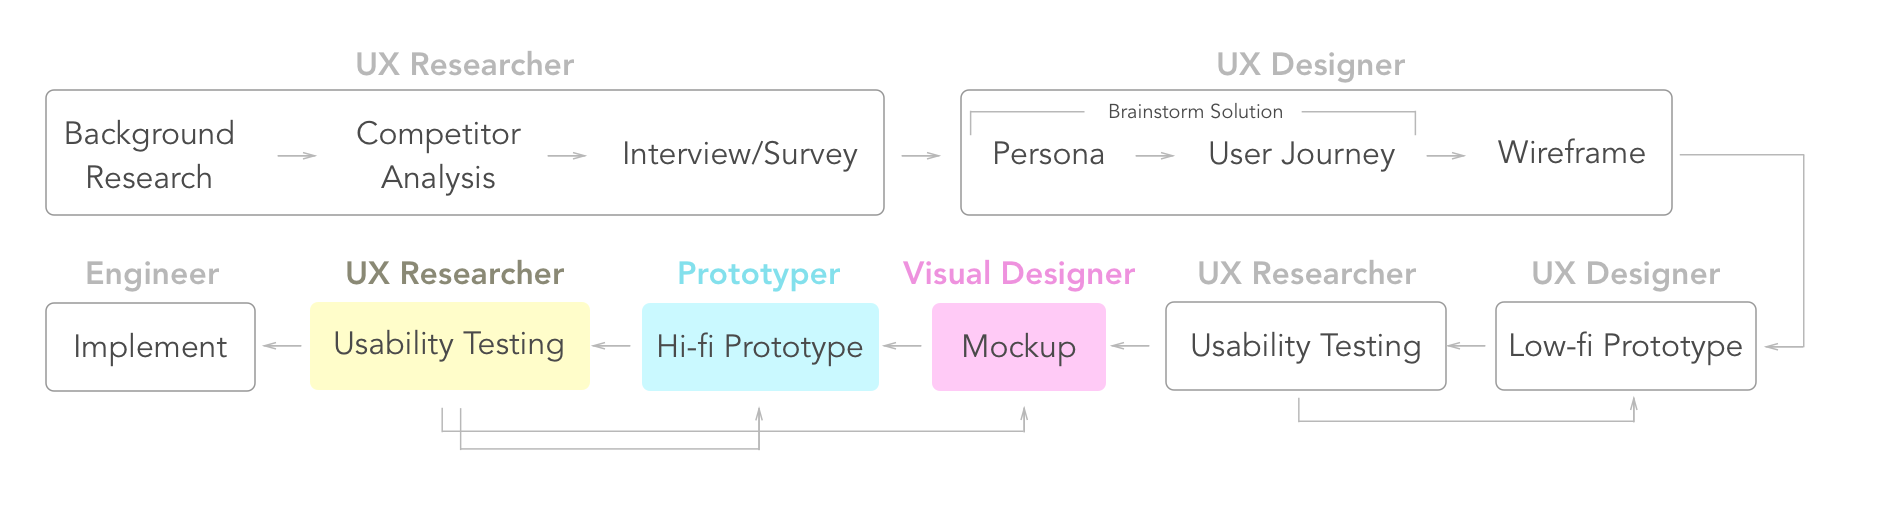 圖1、UX Researcher Prototyper and Visual Designer